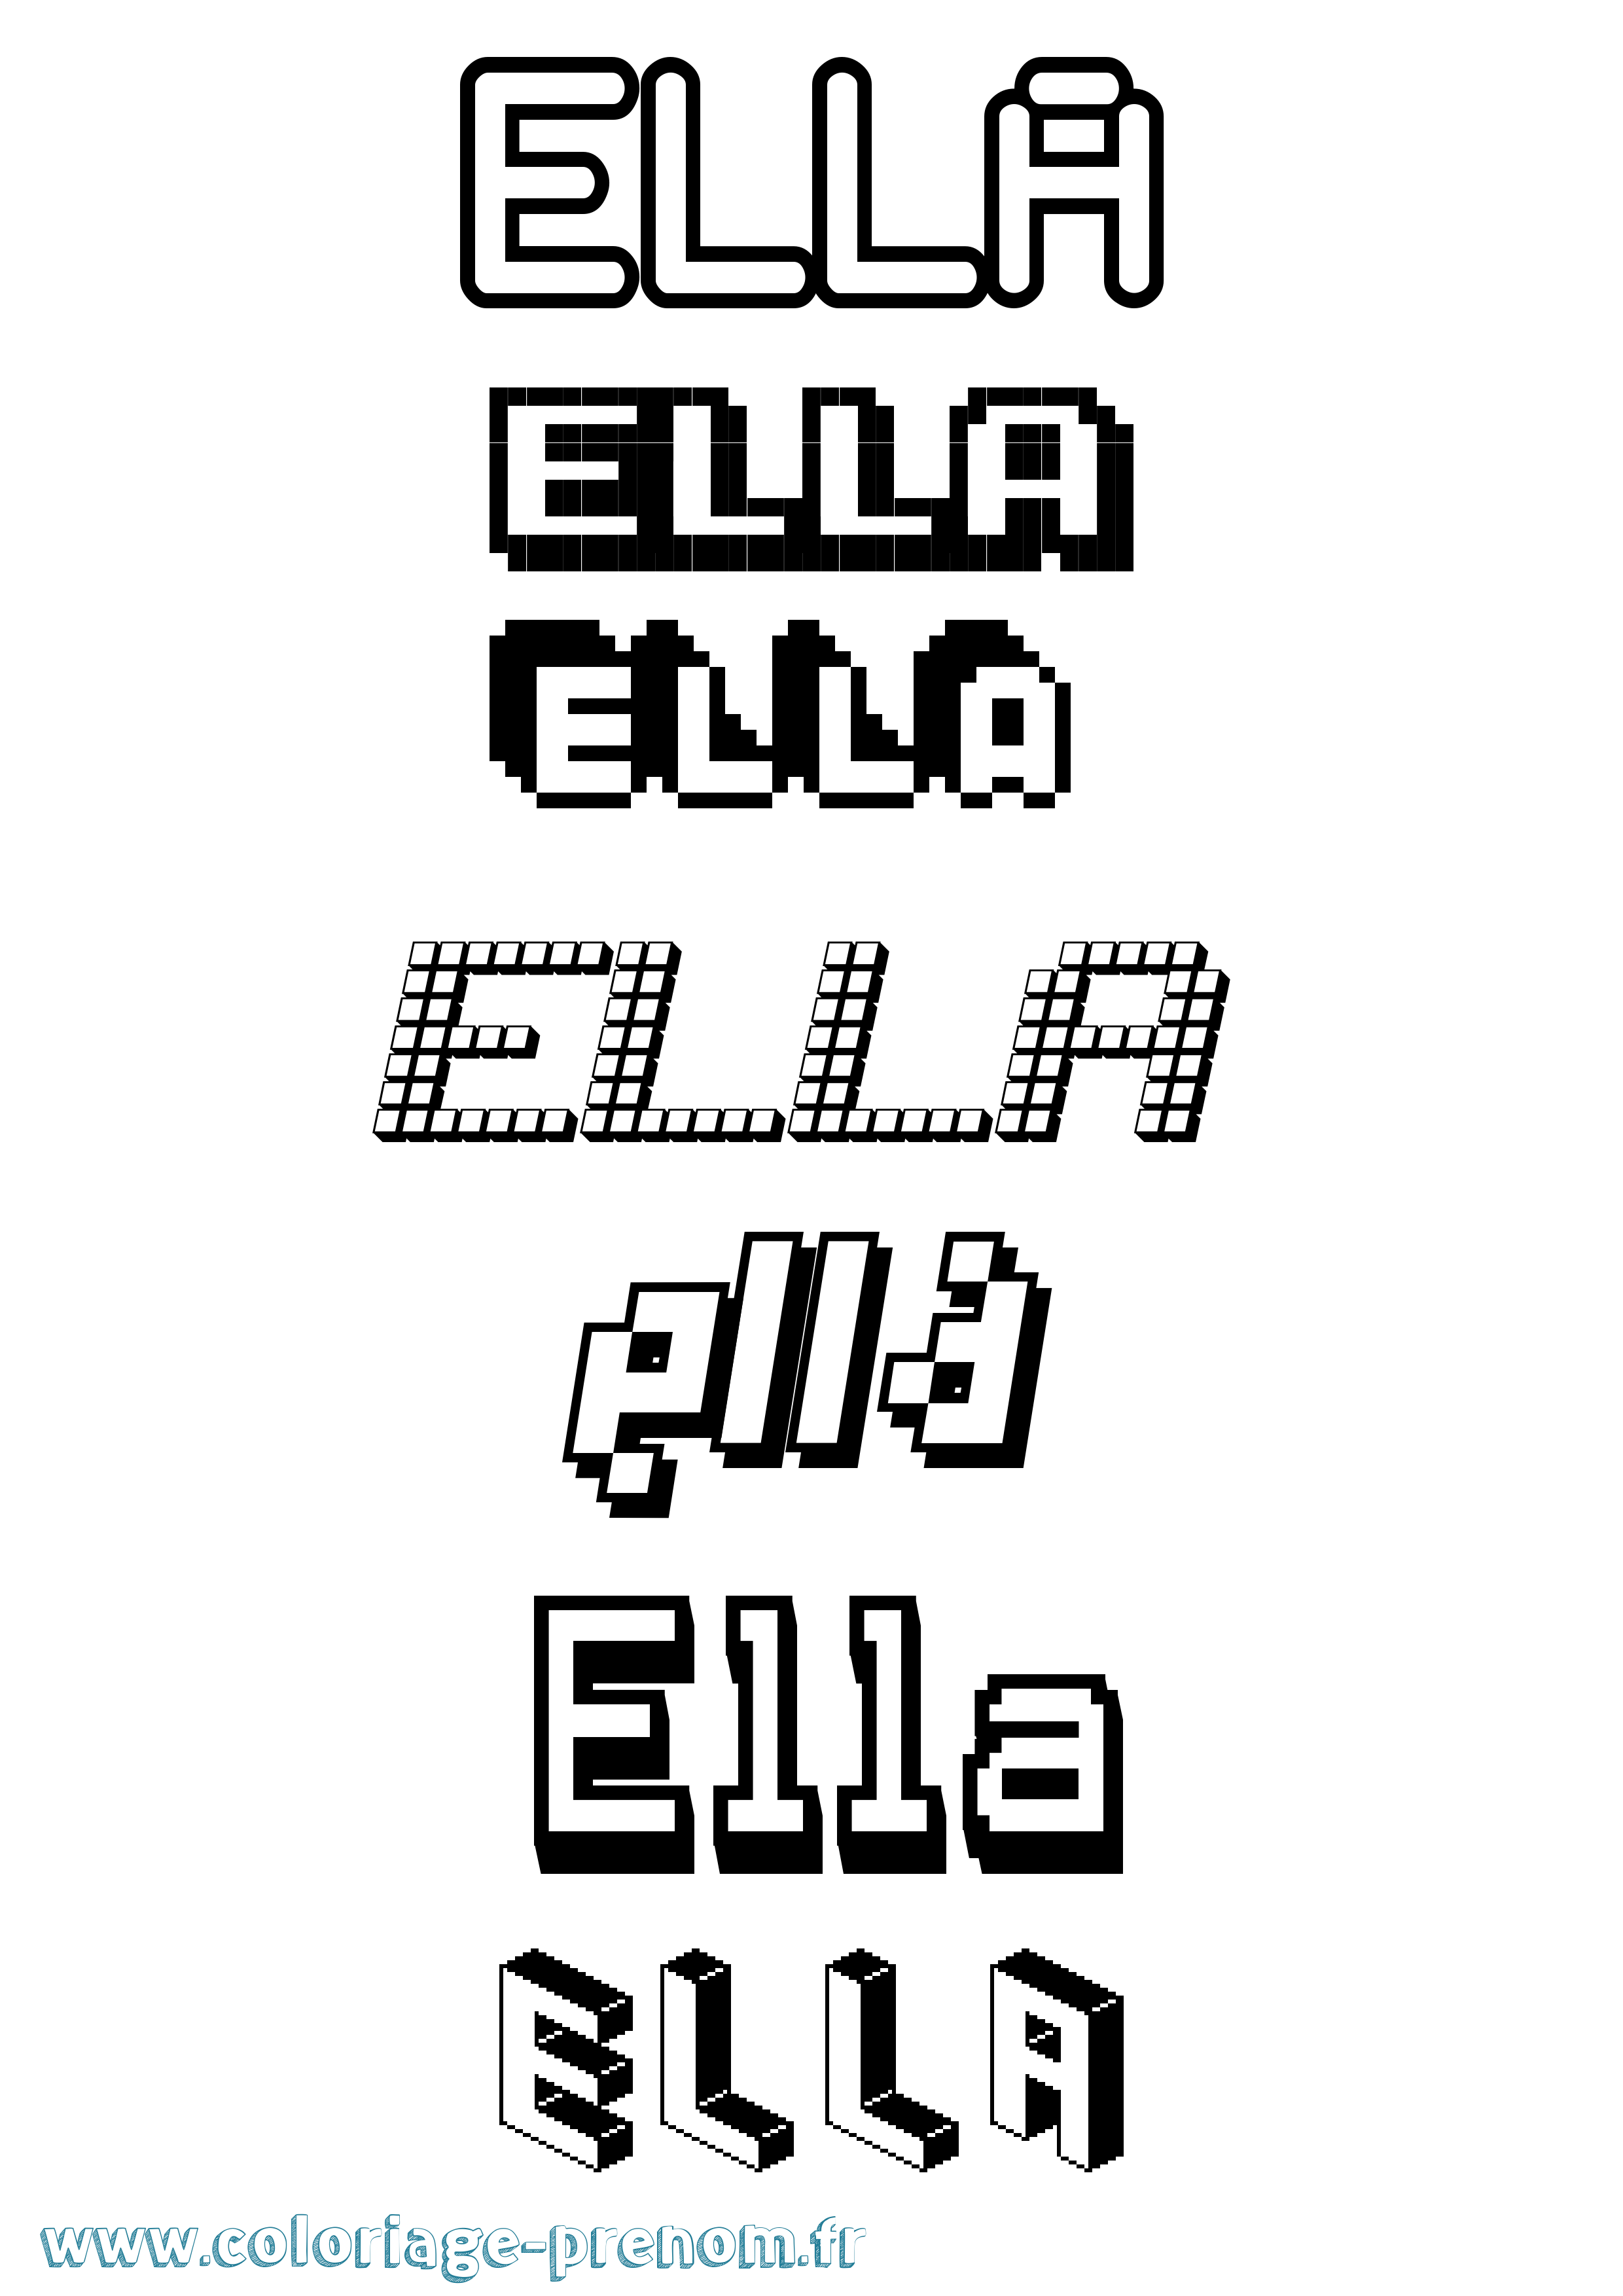 Coloriage prénom Ella